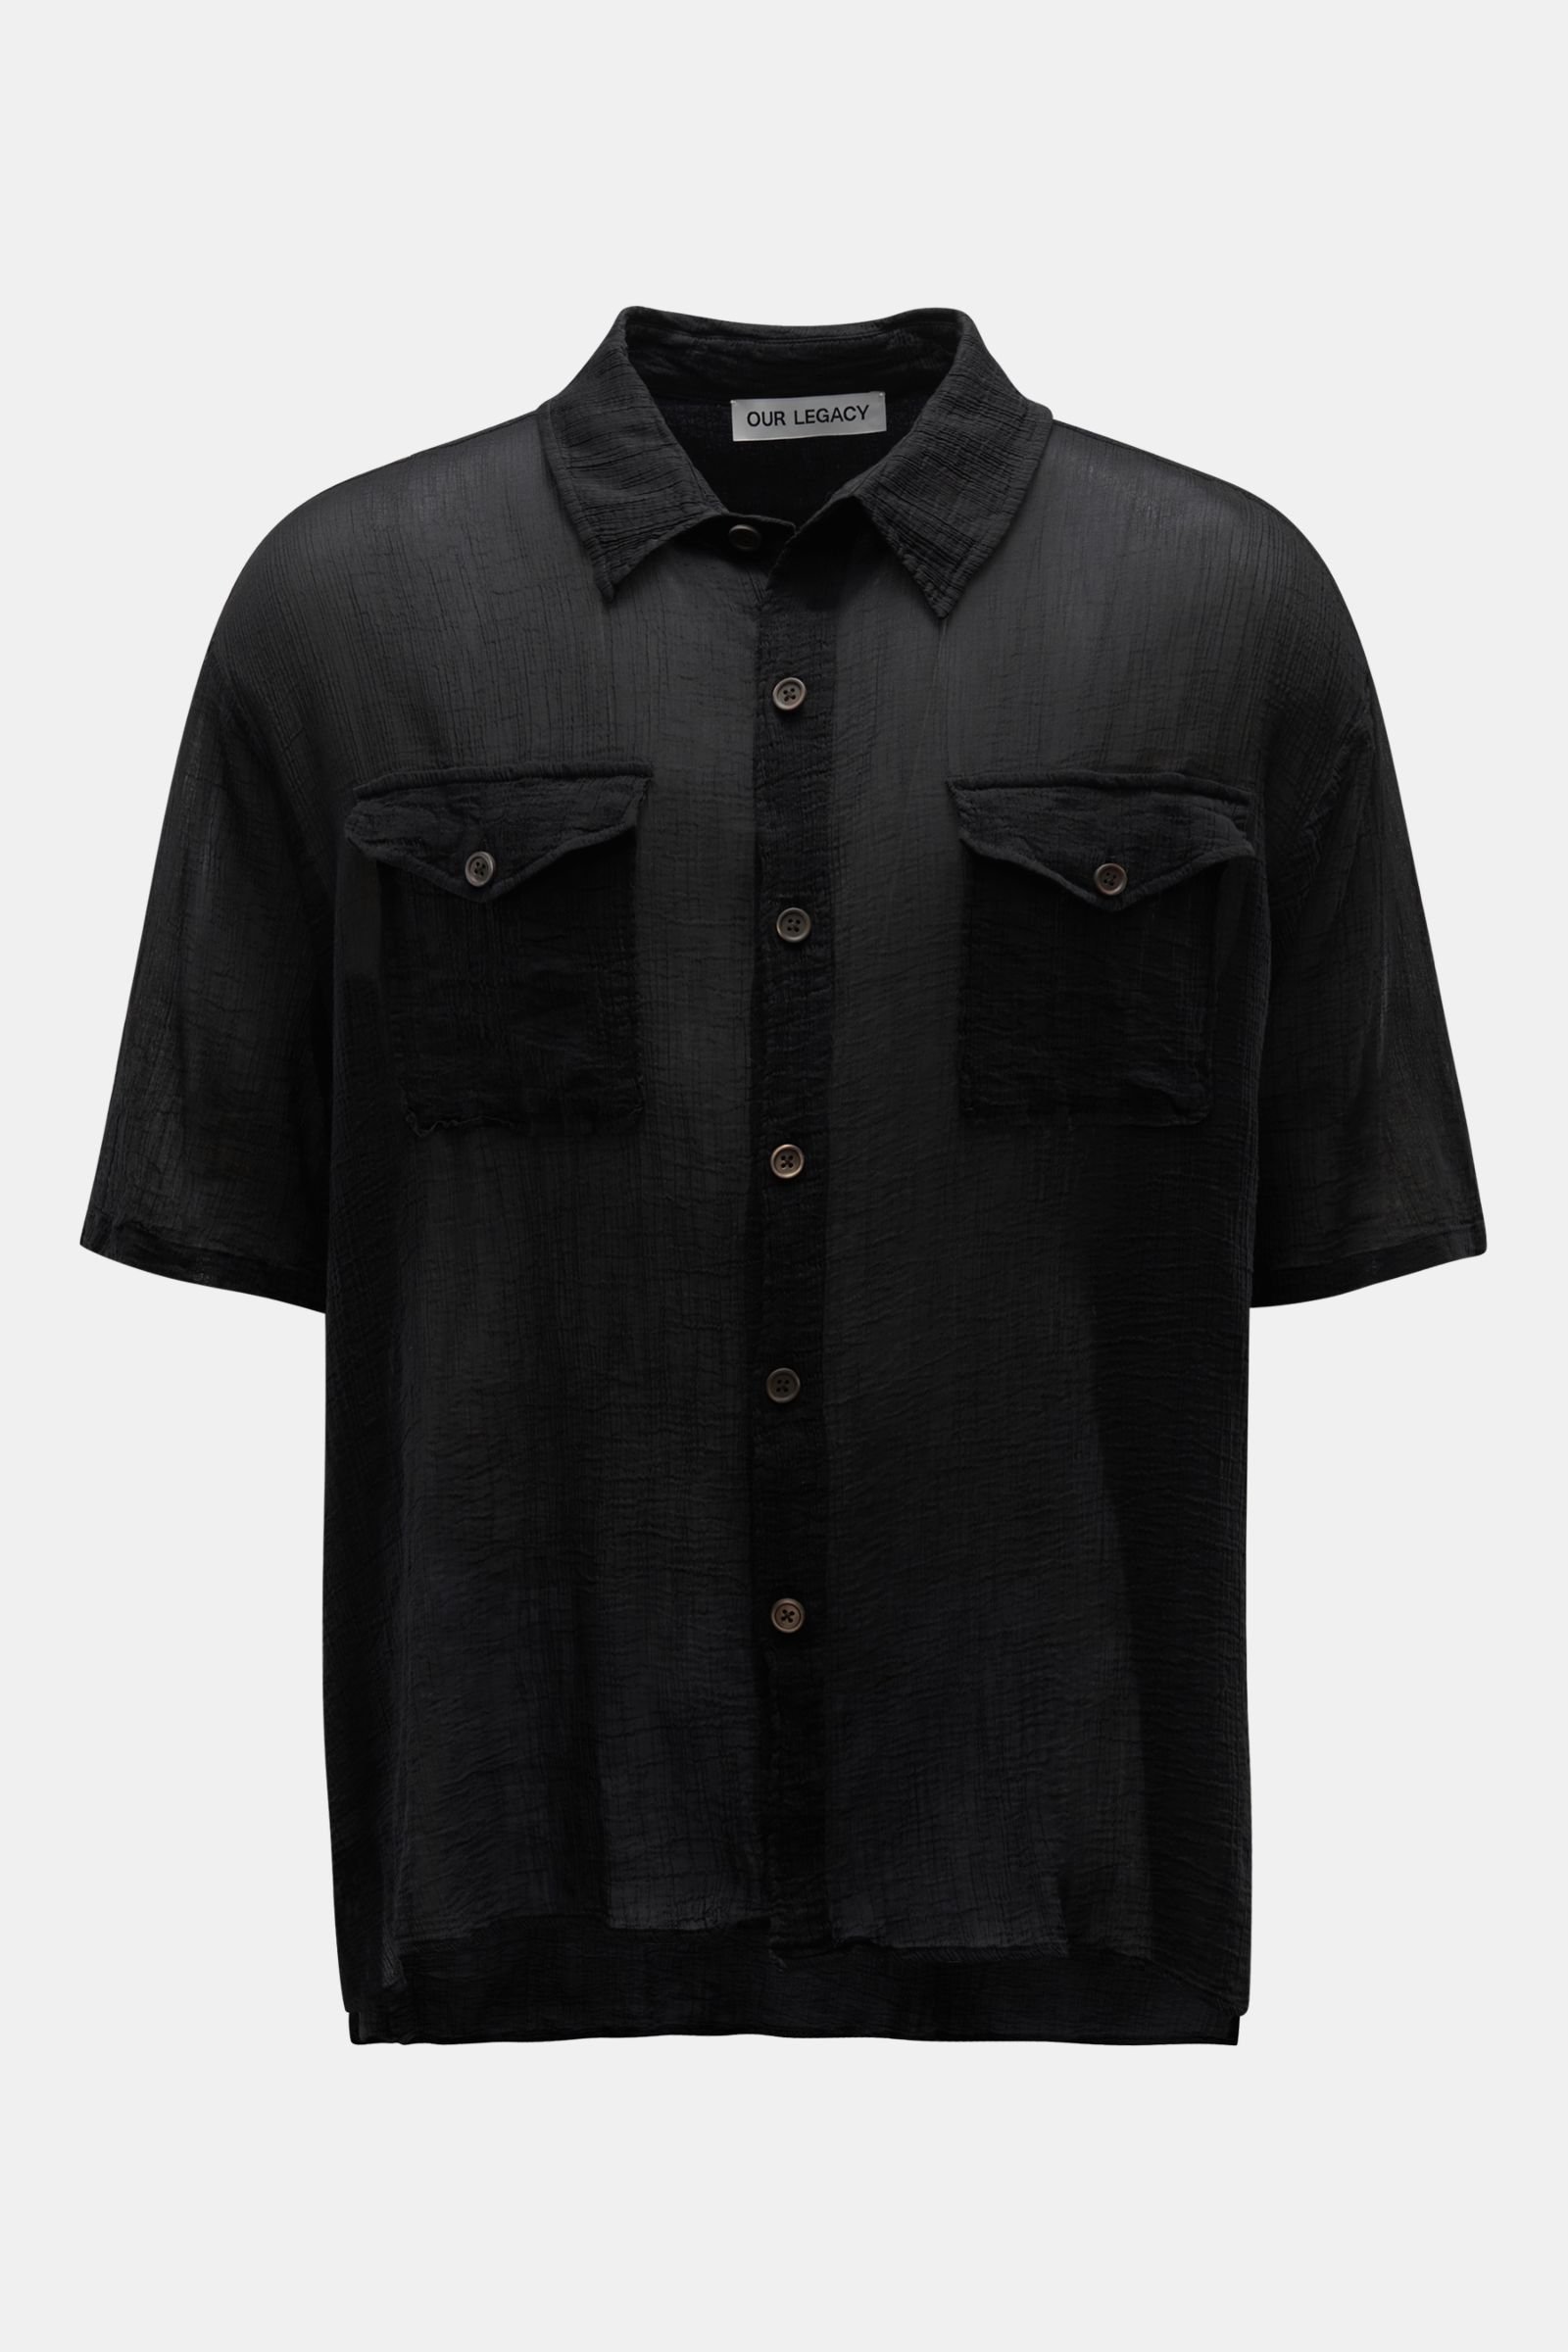 OUR LEGACY overshirt 'Military Base Shortsleeve Shirt' black